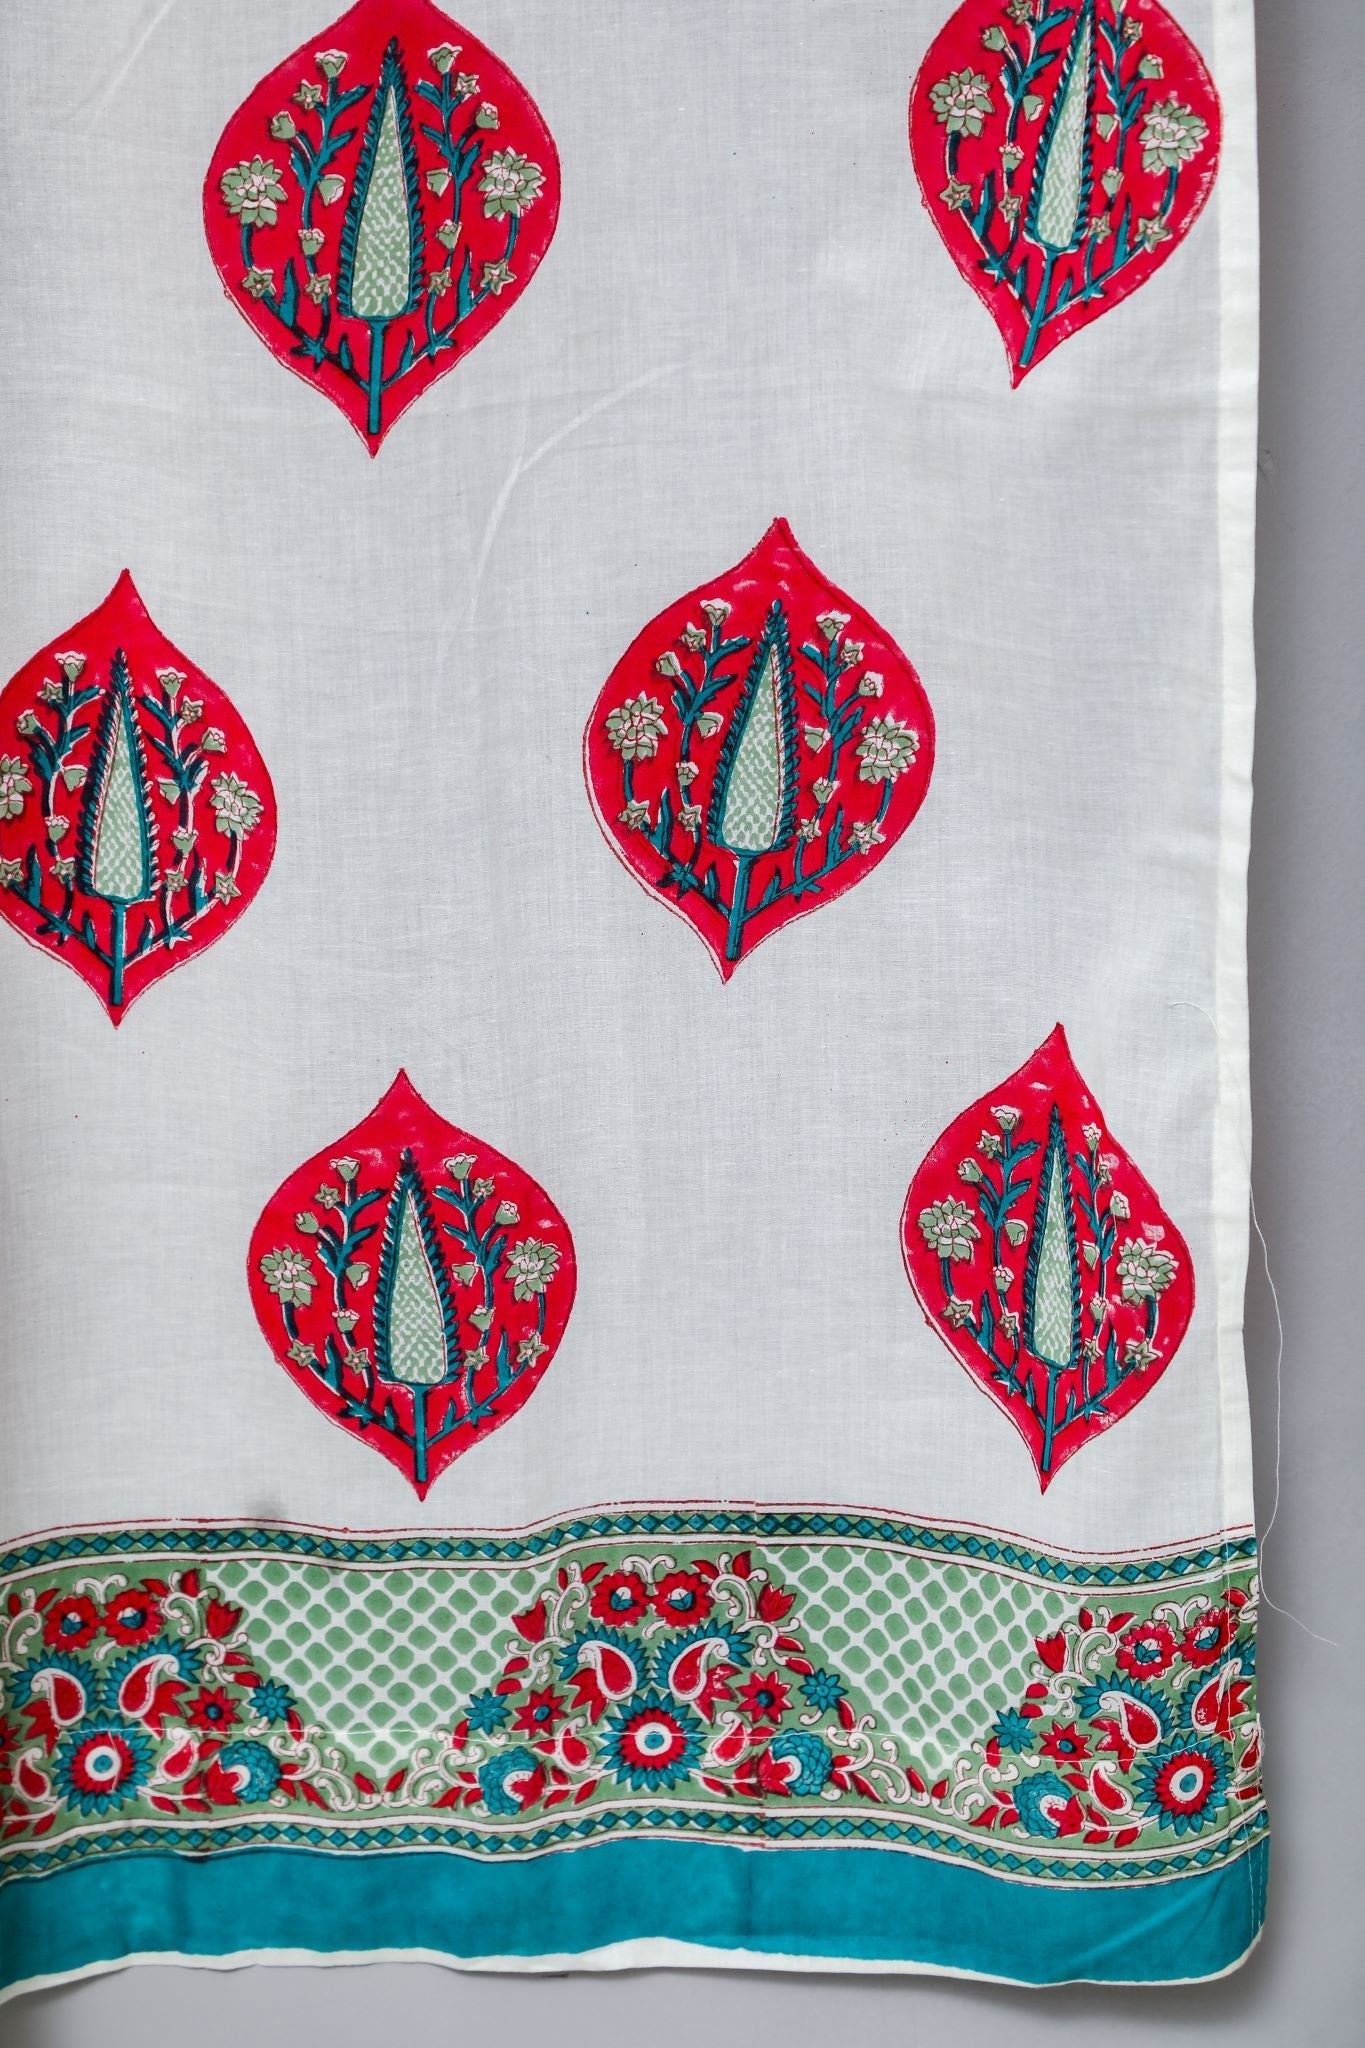 SootiSyahi 'Persian Palm' Handblock Printed Cotton Door Curtain - SootiSyahi